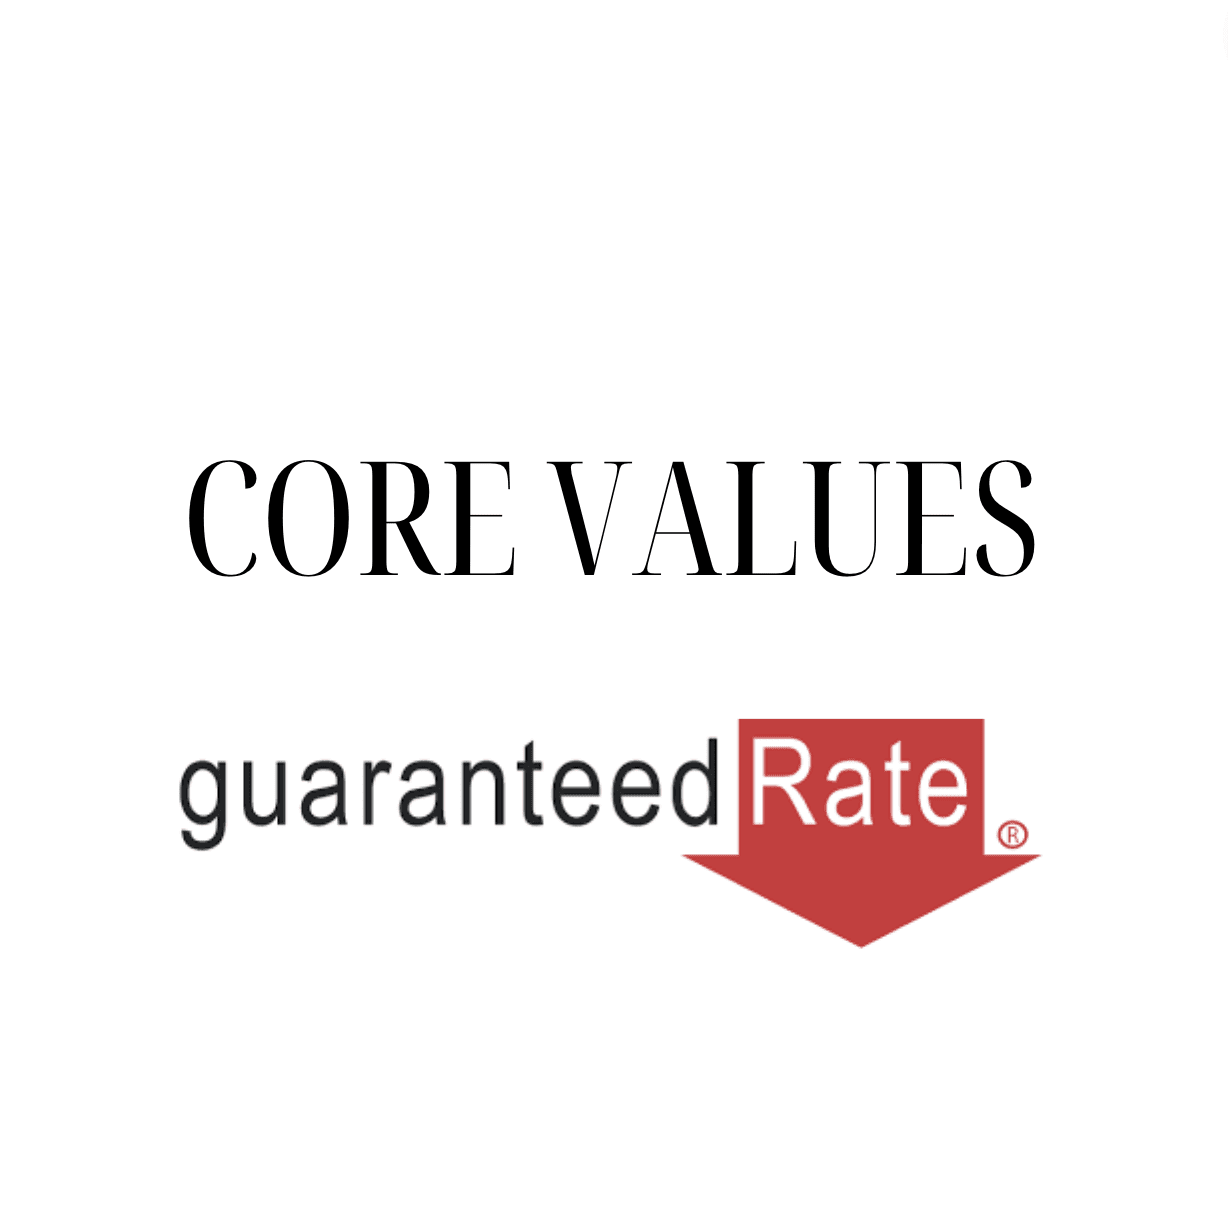 Guaranteed Rate - Core Values